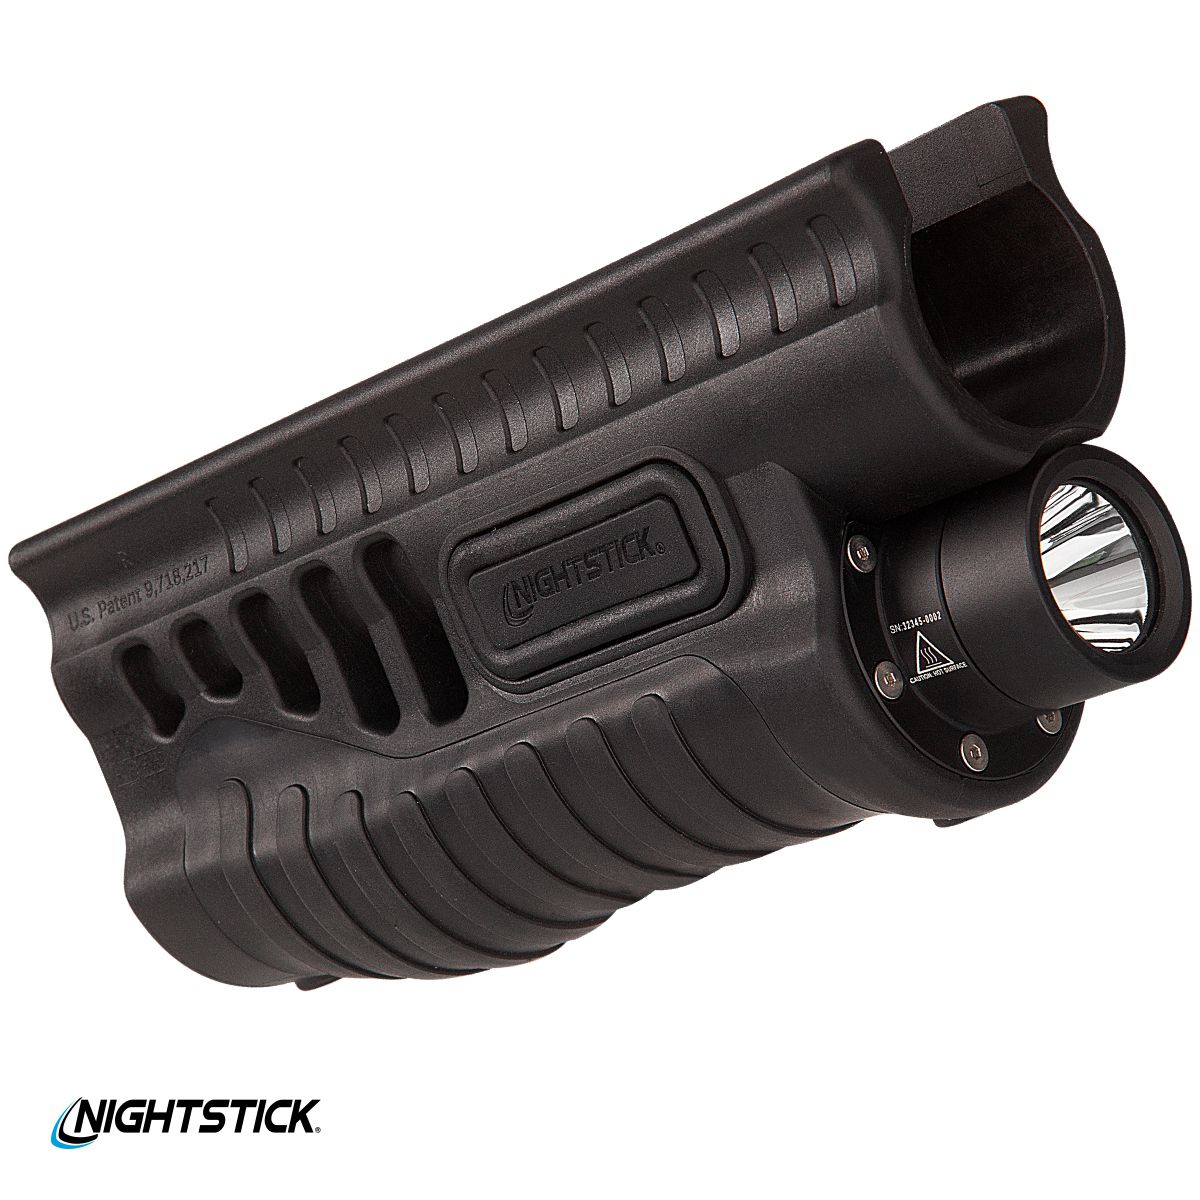 Předpažbí Nightstick SFL-13GL pro Remington 870/TAC-14 se svítilnou, laserem a spínačem